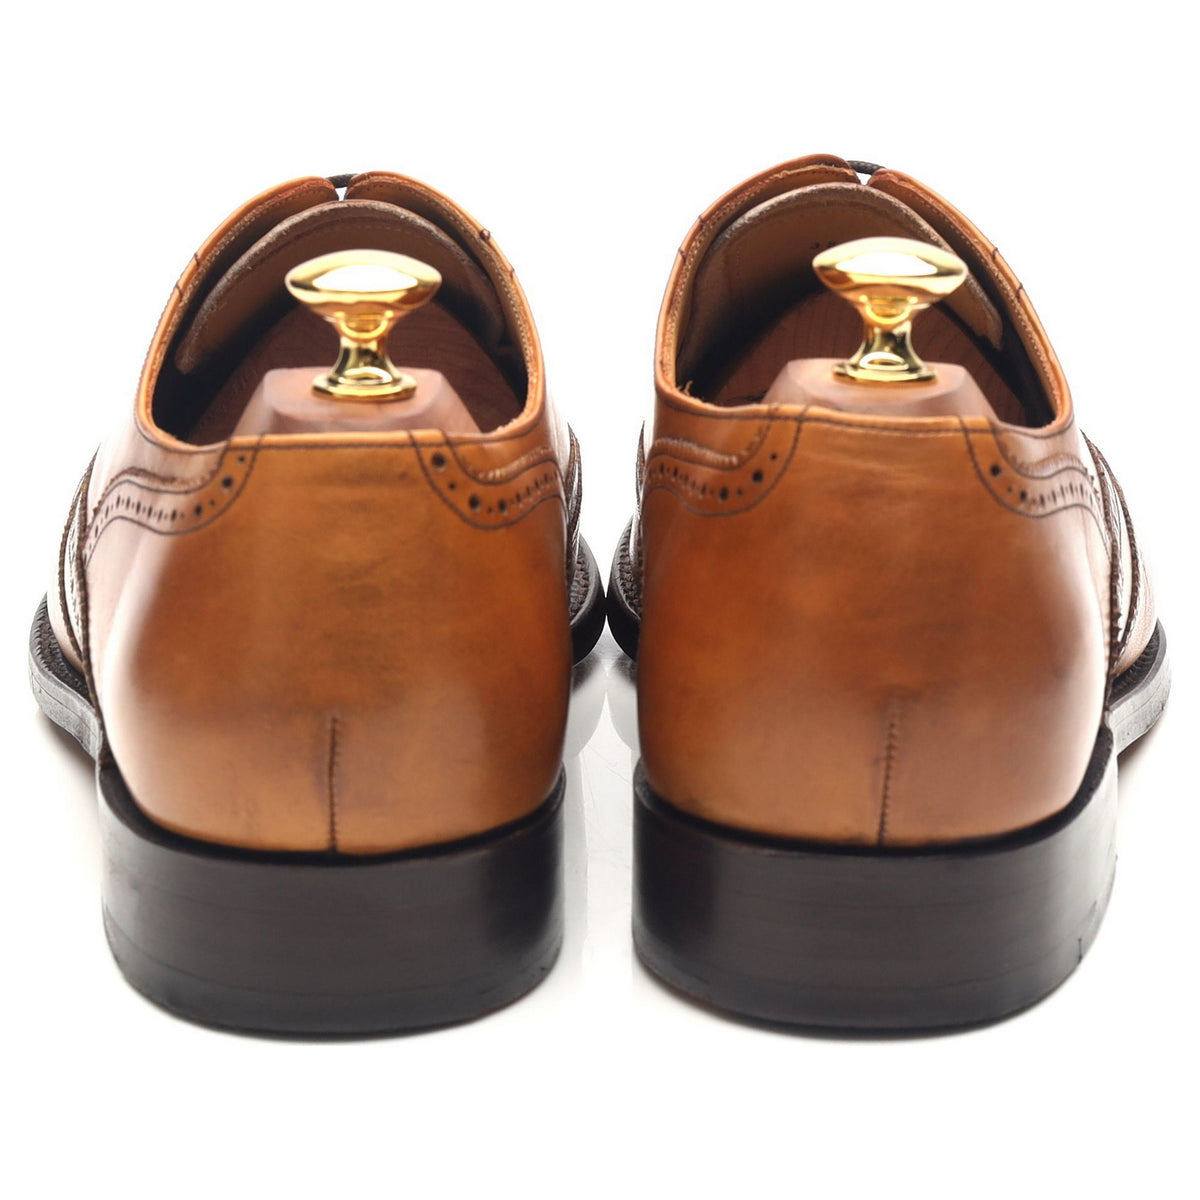 &#39;Newport&#39; Tan Brown Leather Brogues UK 9 G